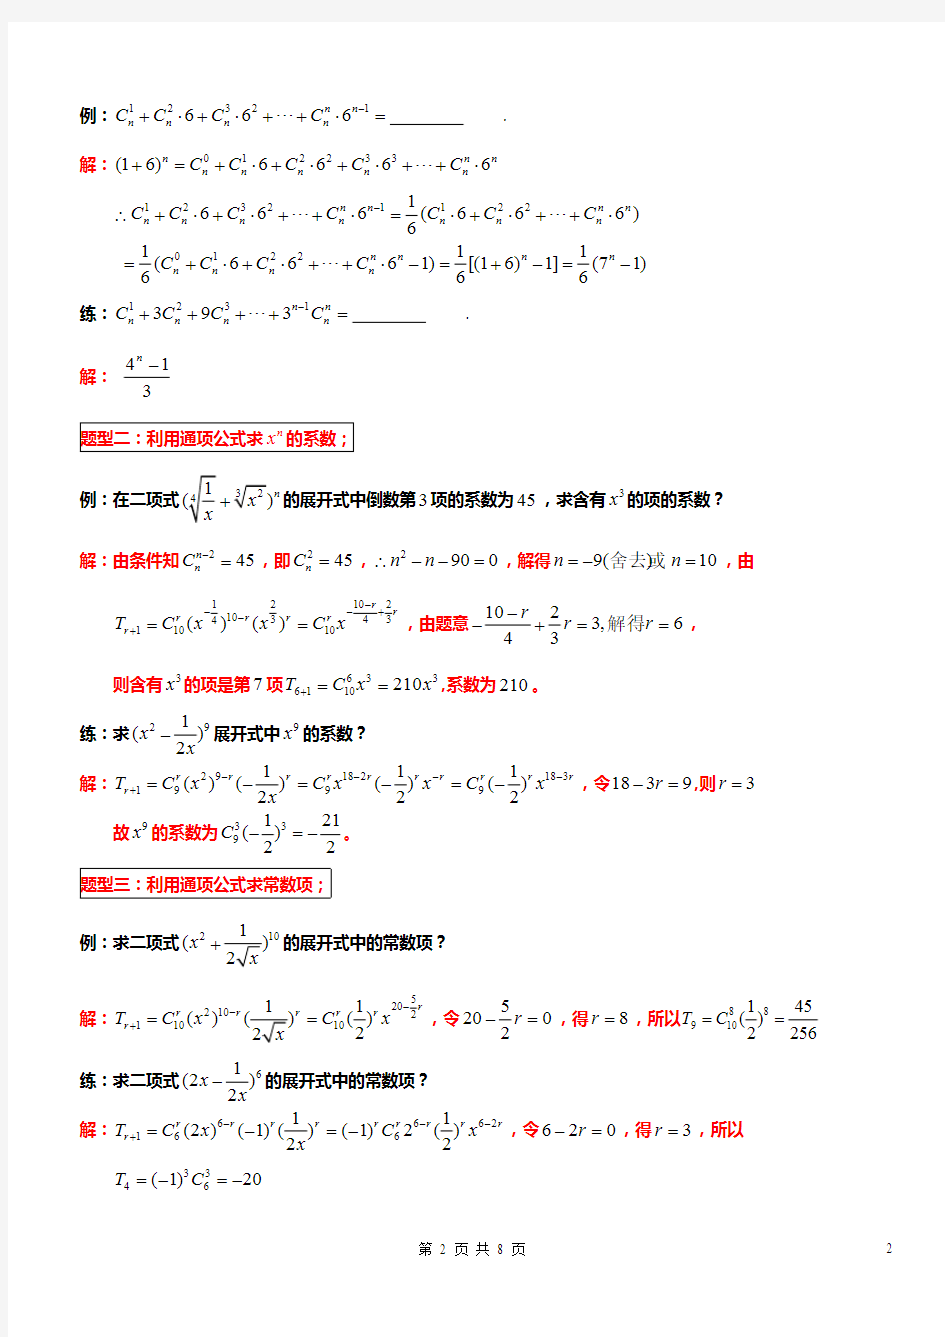 二项式定理十大典型例题配套练习